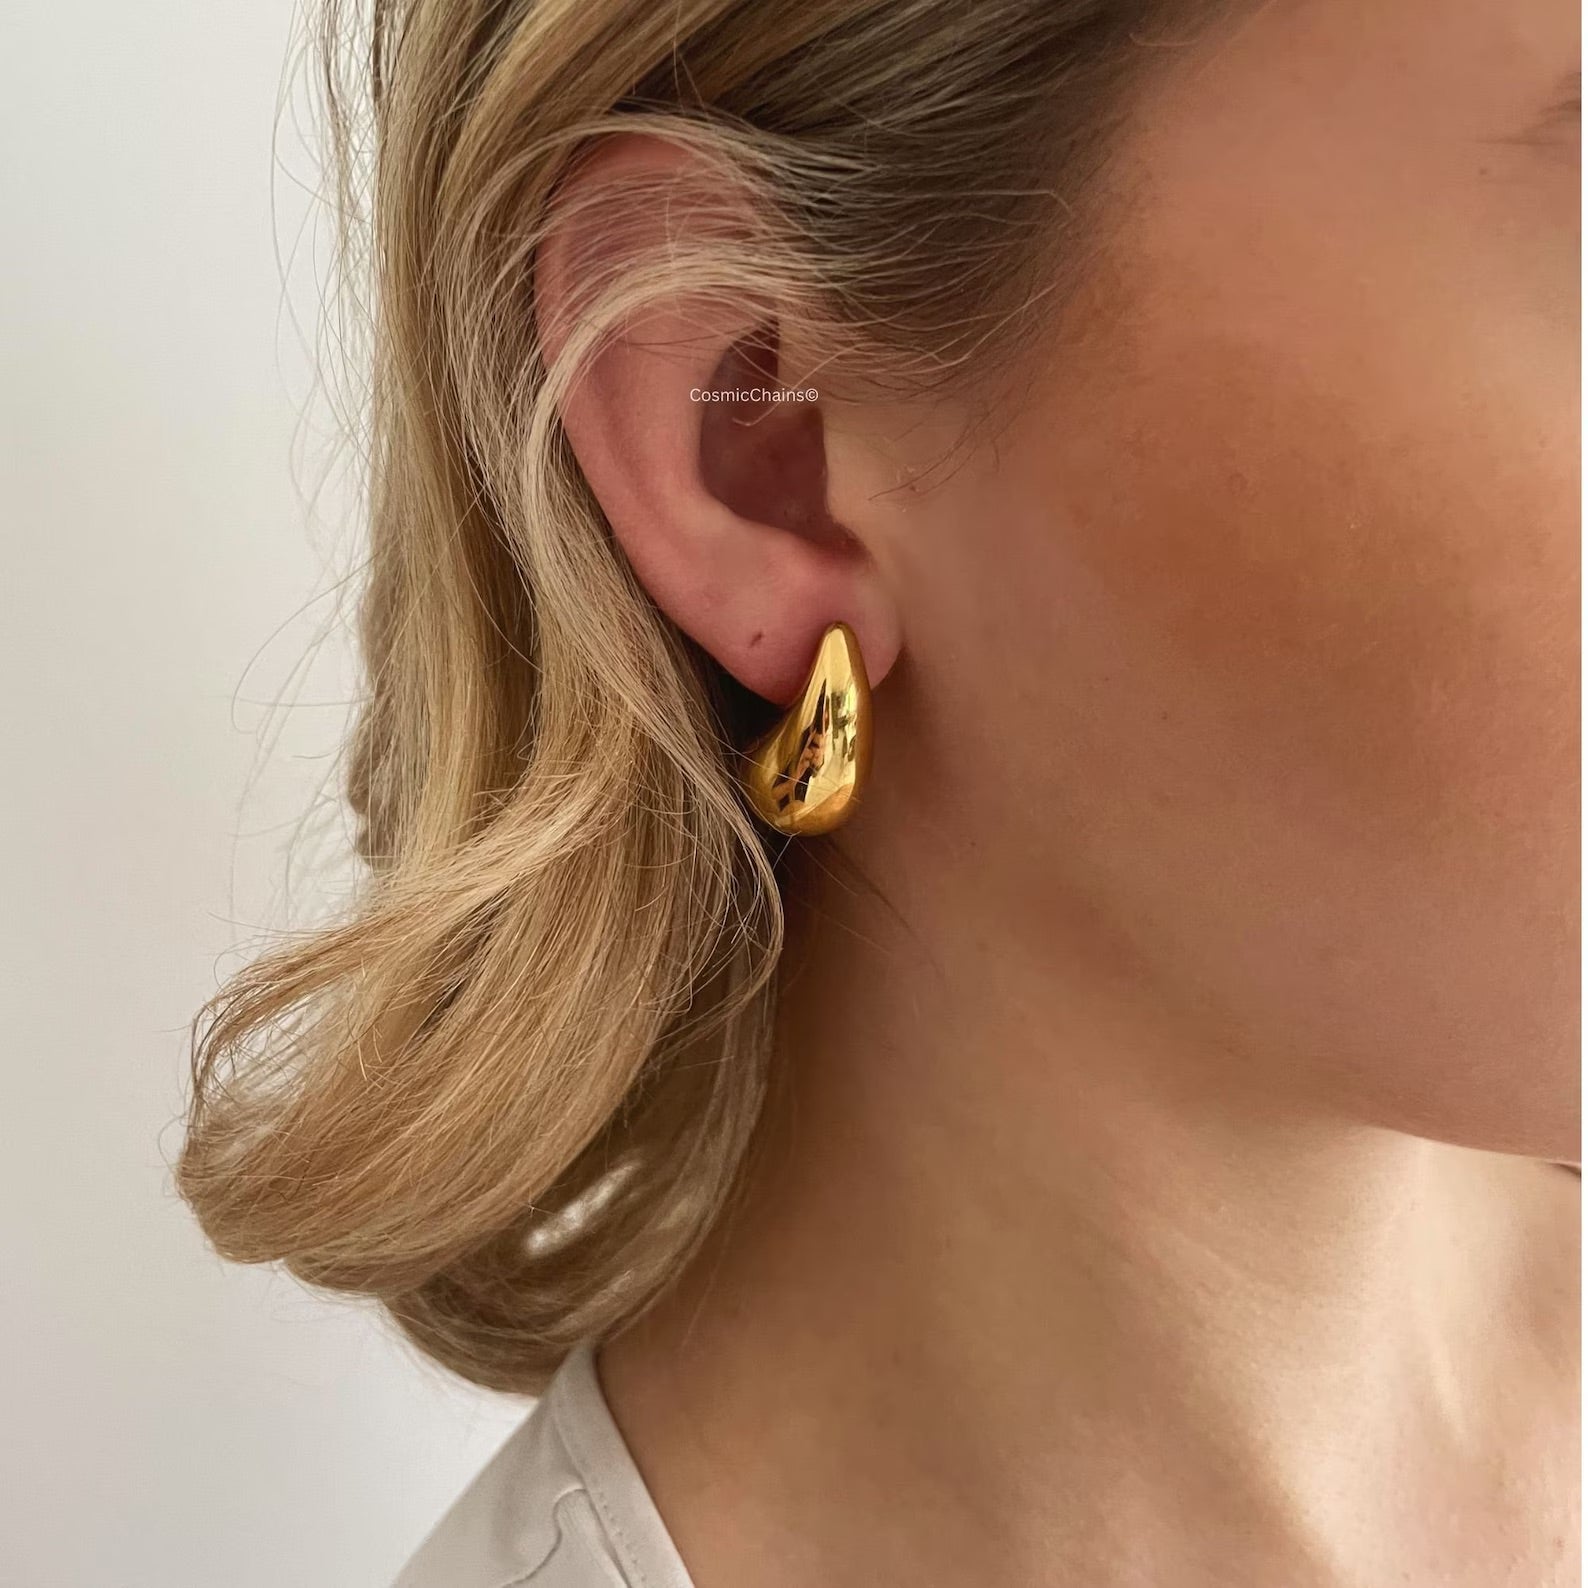 Trendy tear drop earrings in statement design